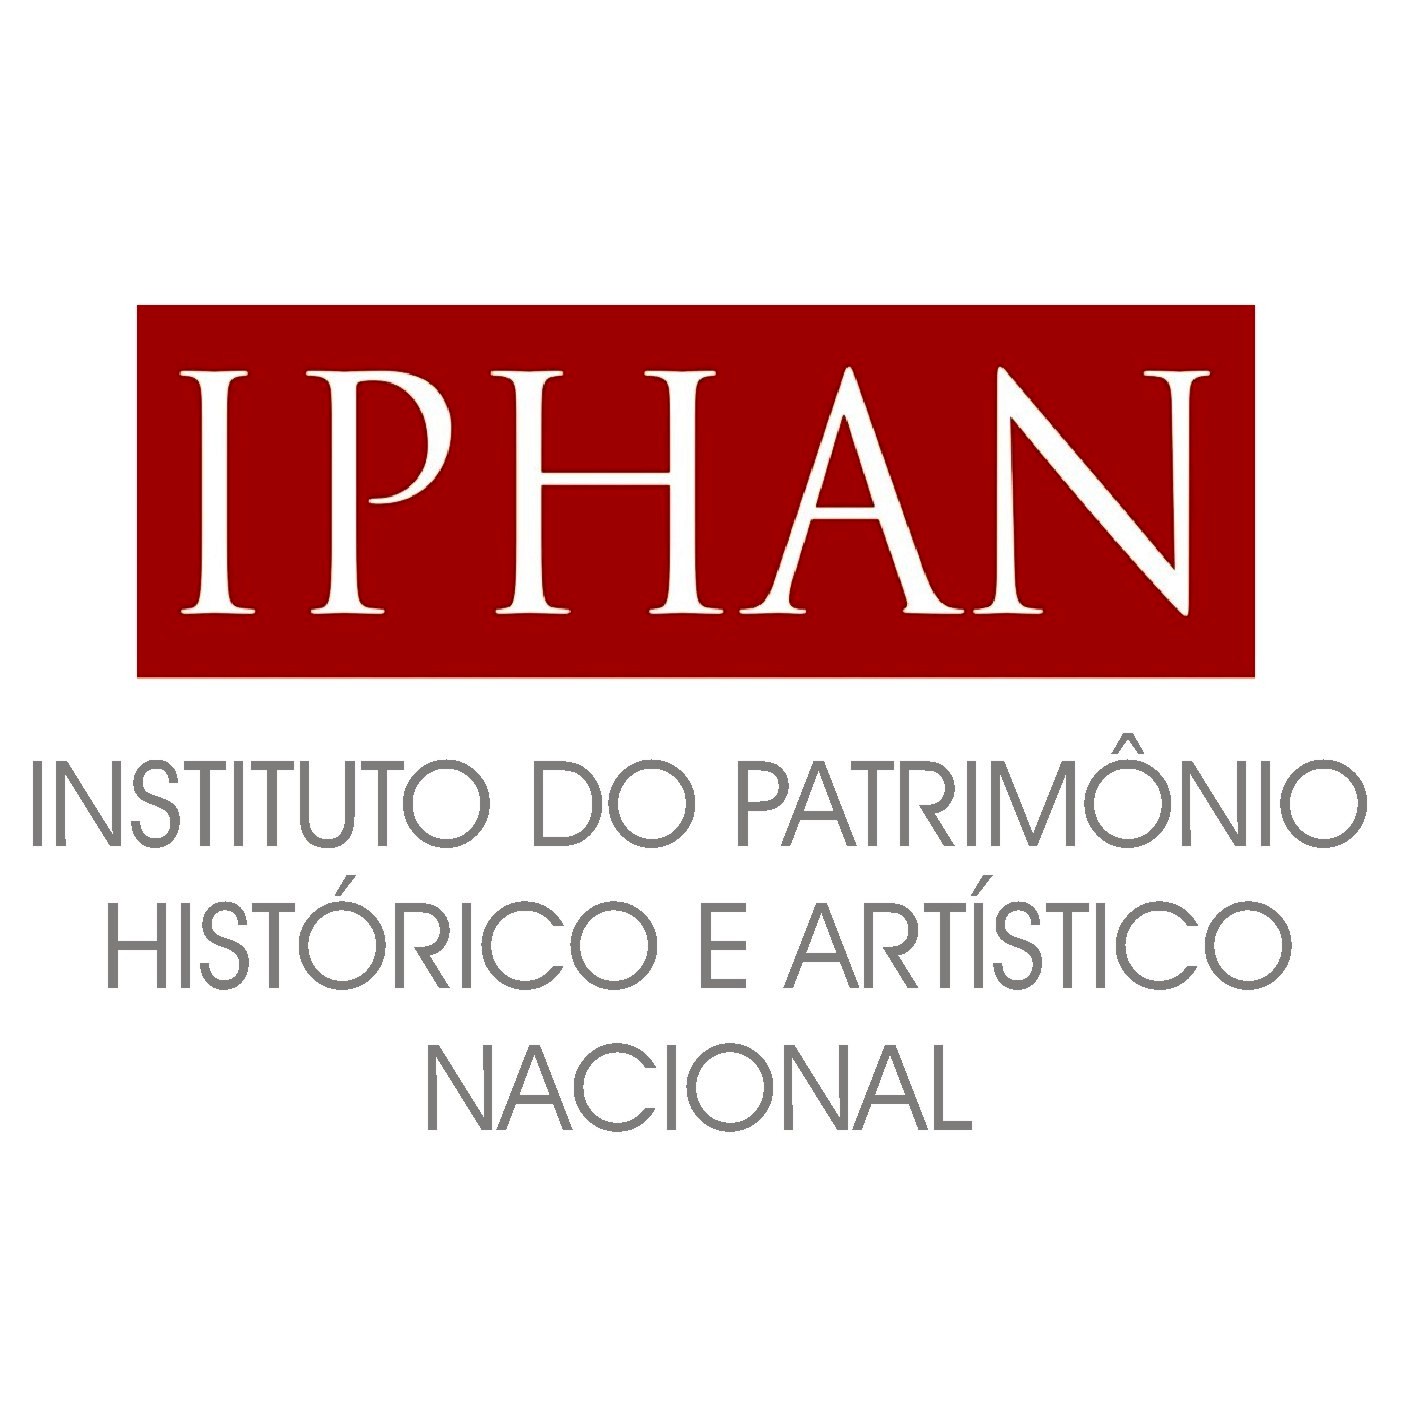 Iphan Nacional